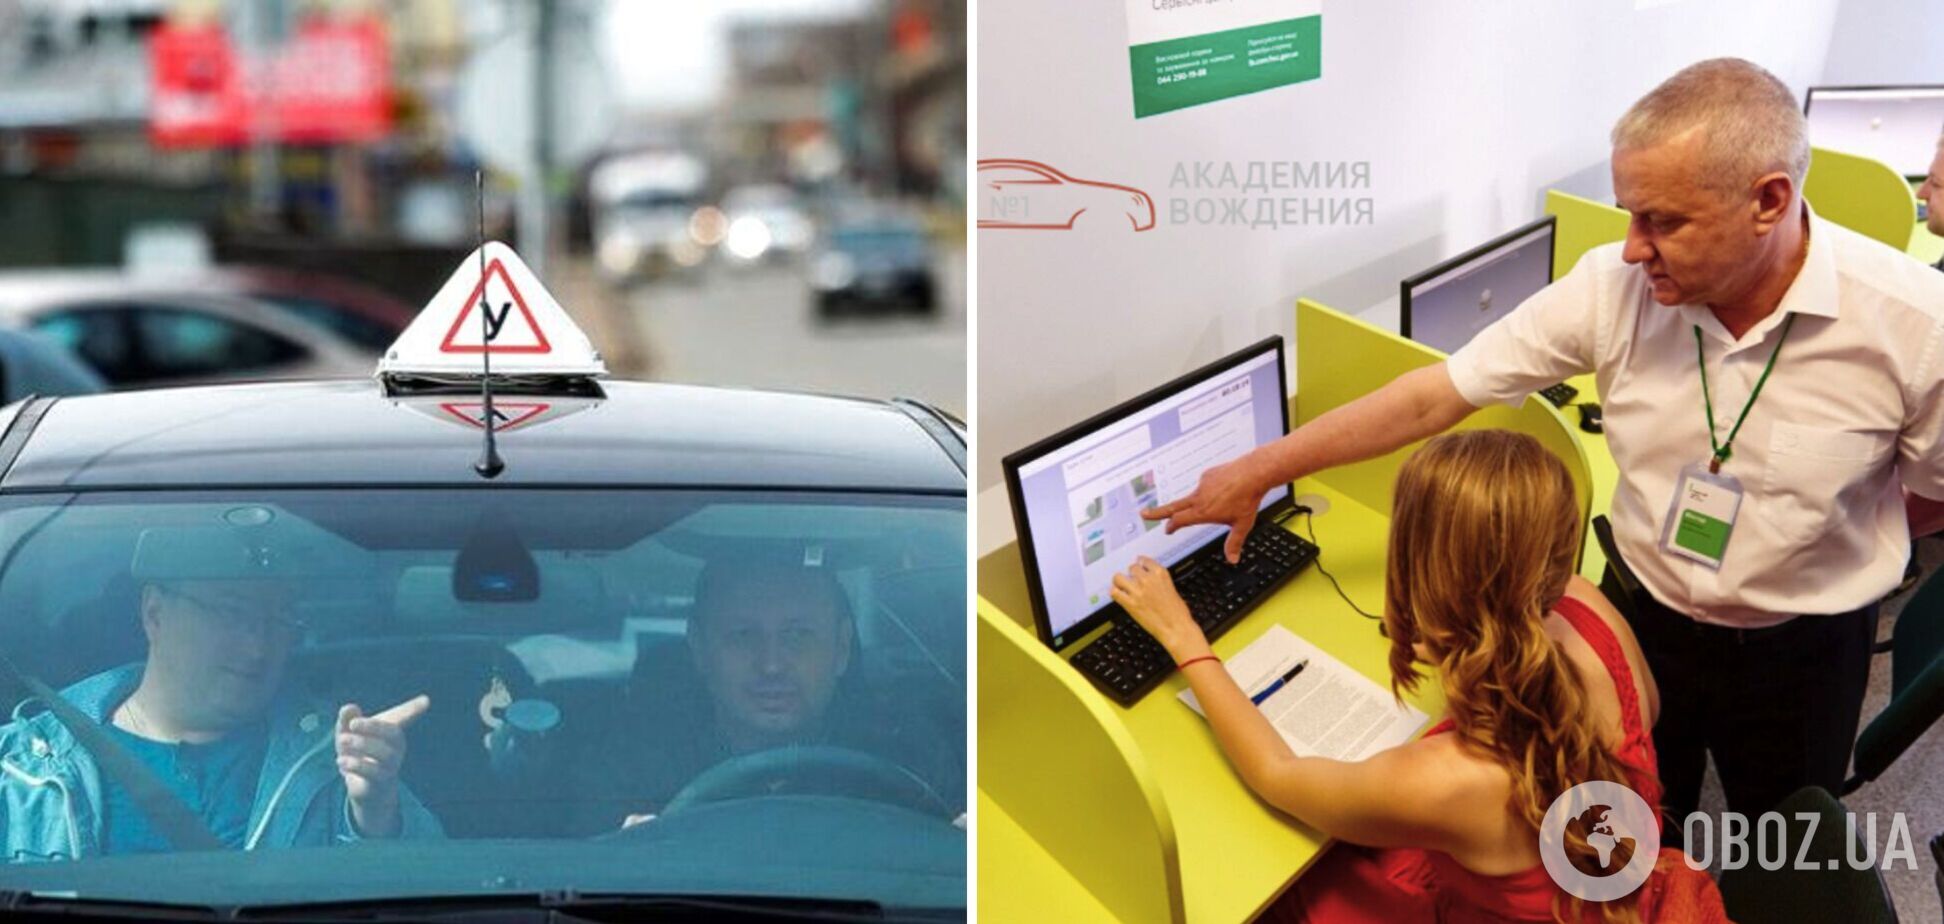 Українці зможуть складати теоретичний іспит для отримання посвідчення водія без навчання в автошколі: як це працюватиме